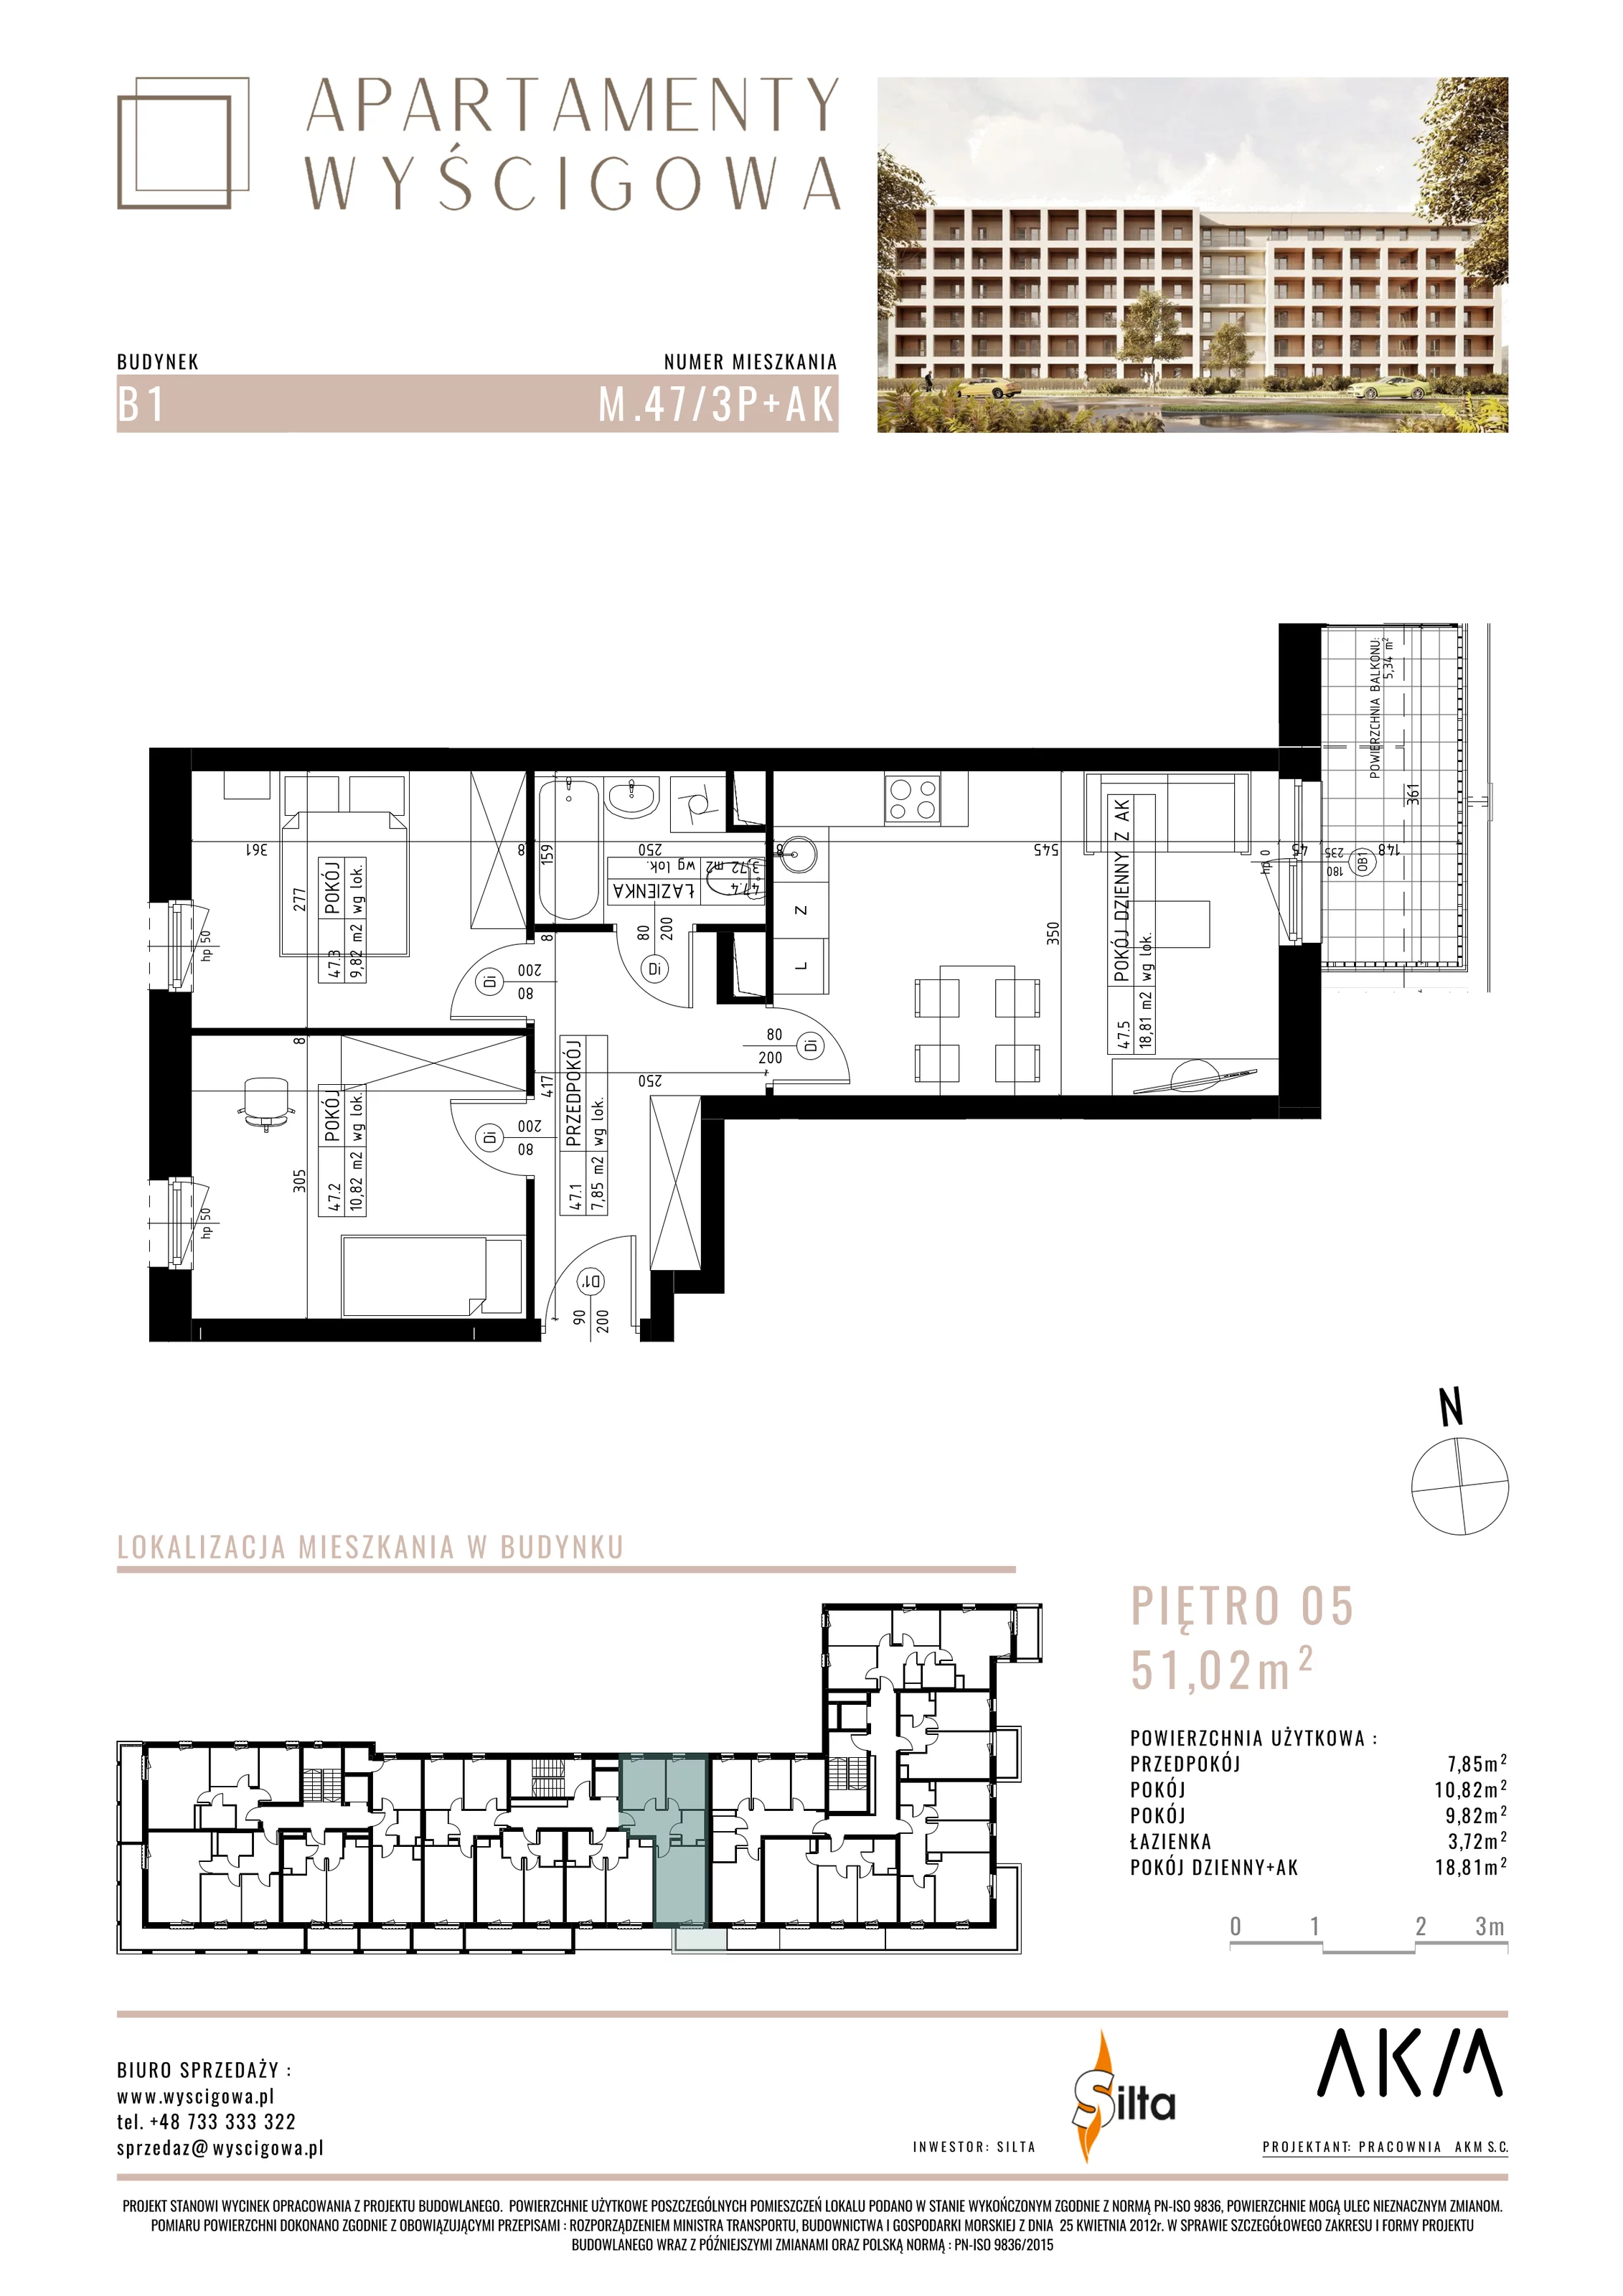 Mieszkanie 51,02 m², piętro 5, oferta nr B1.M47, Apartamenty Wyścigowa, Lublin, Dziesiąta, Dziesiąta, ul. Wyścigowa